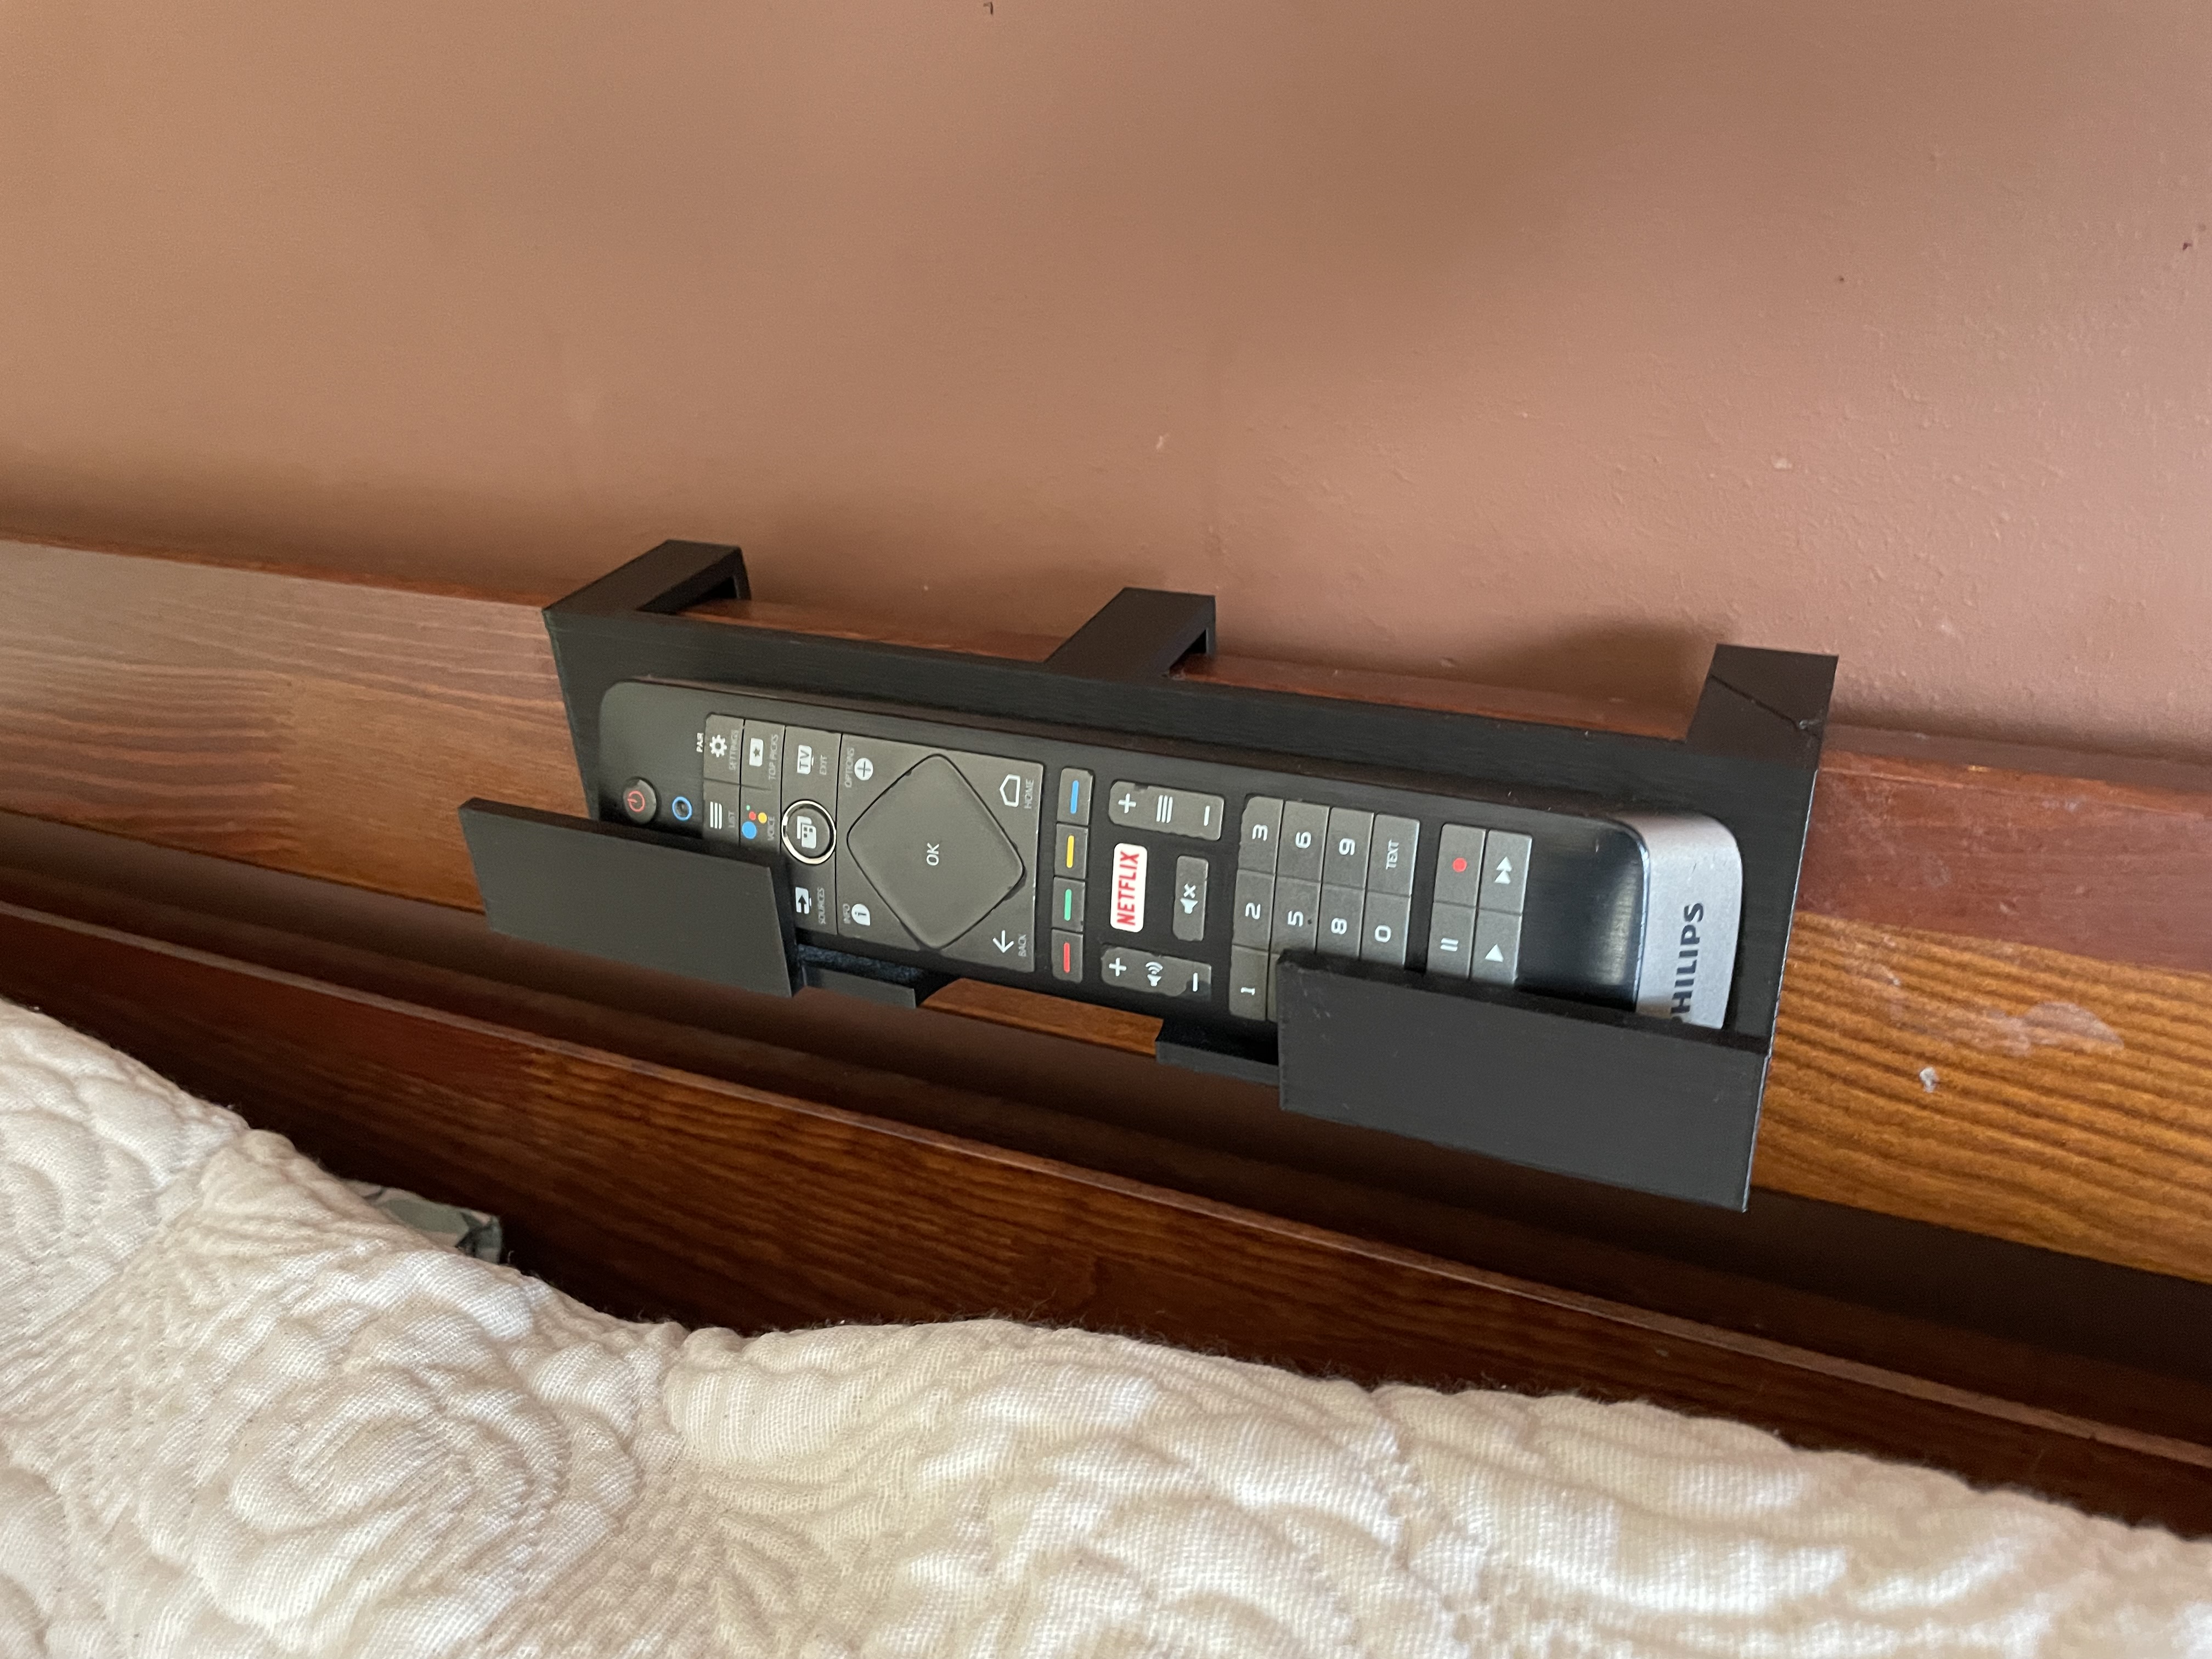 Tv remote bed holder